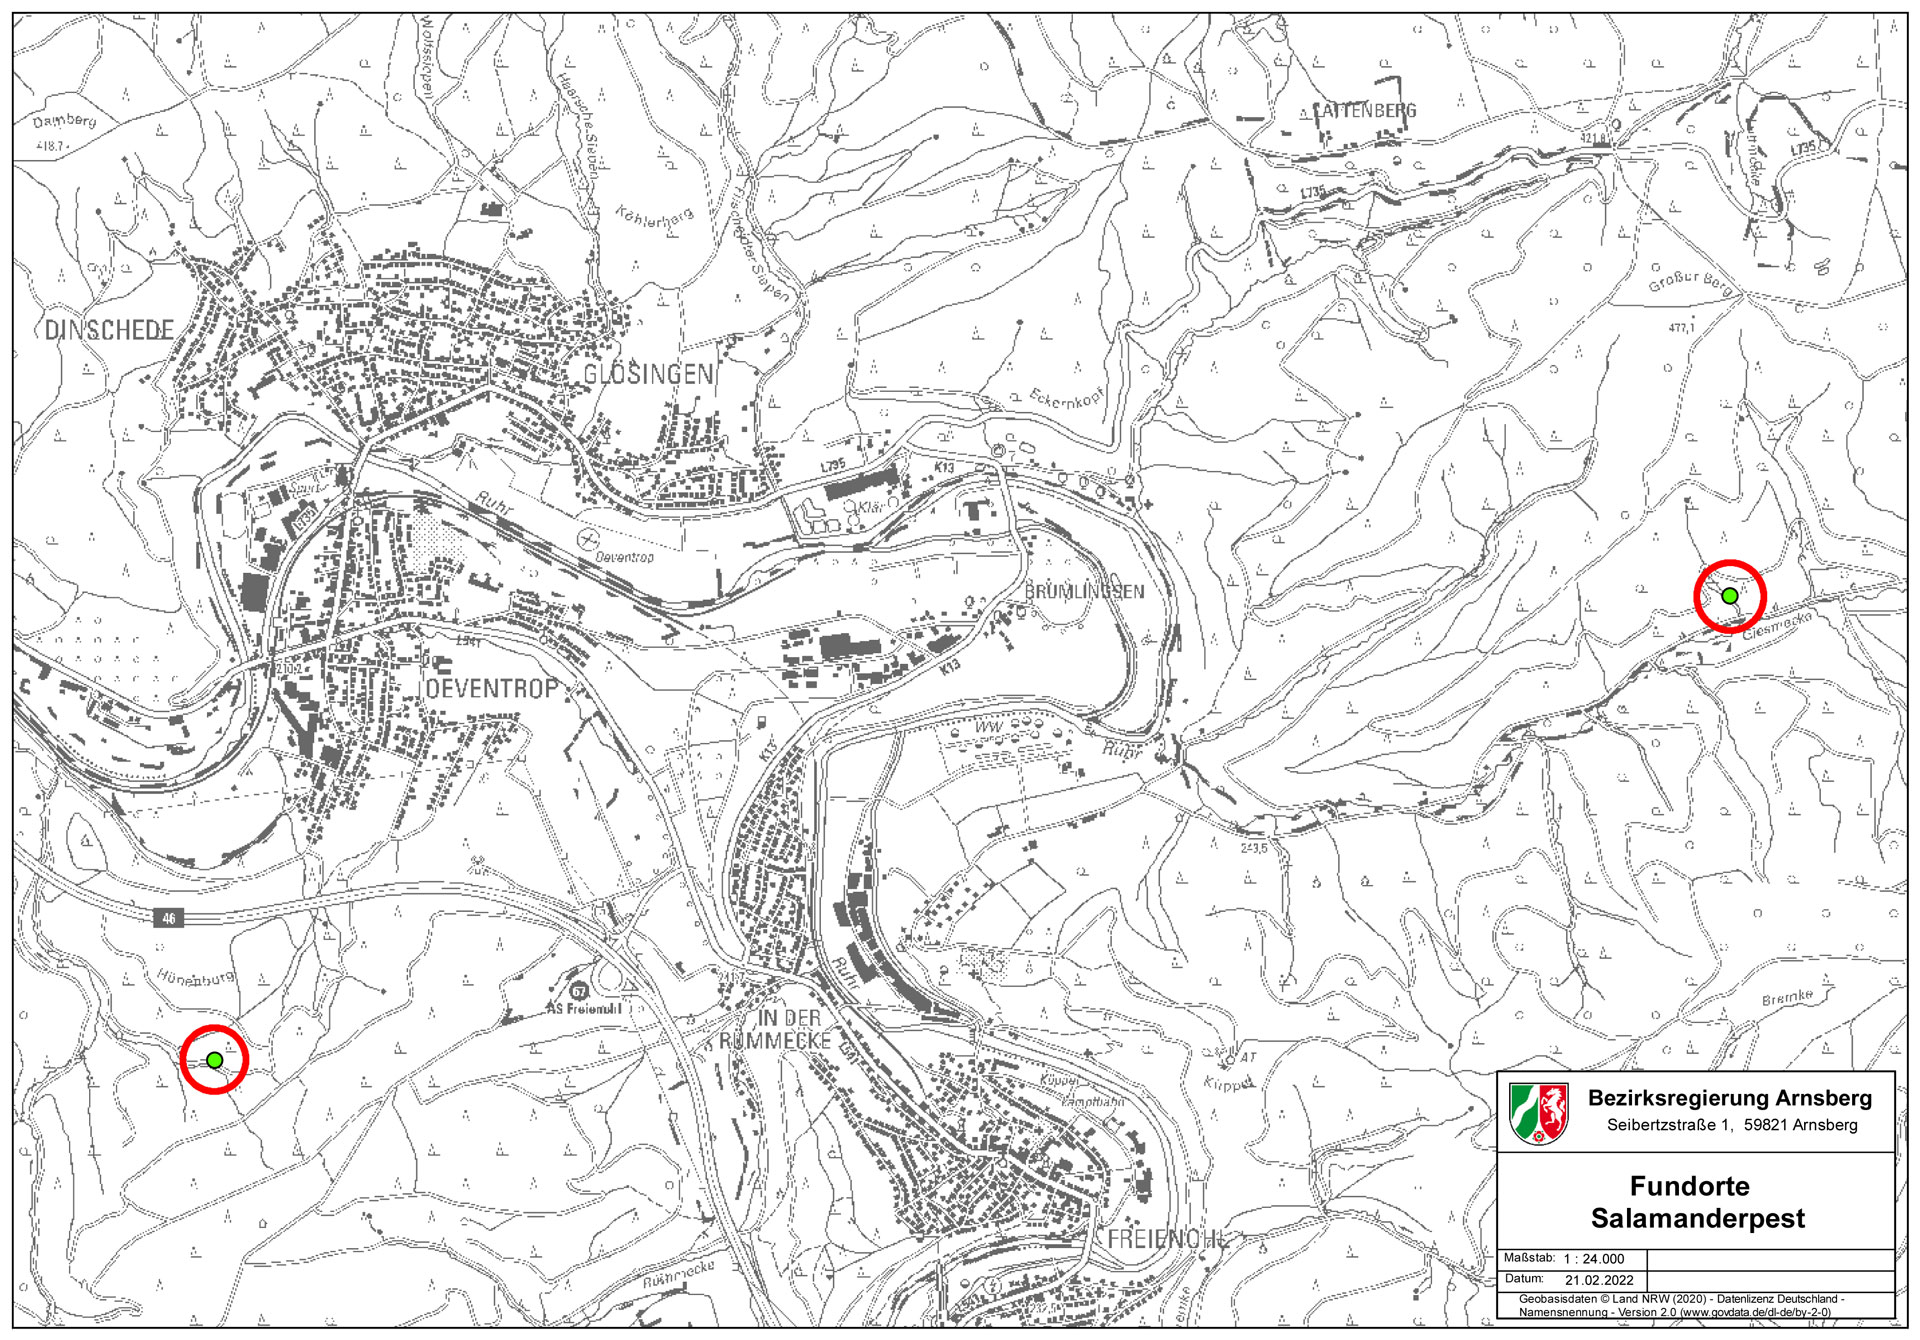 Karte der Fundorte Feuersalamanderpest im Arnsberger Wald bei Oeventrop und Freienohl